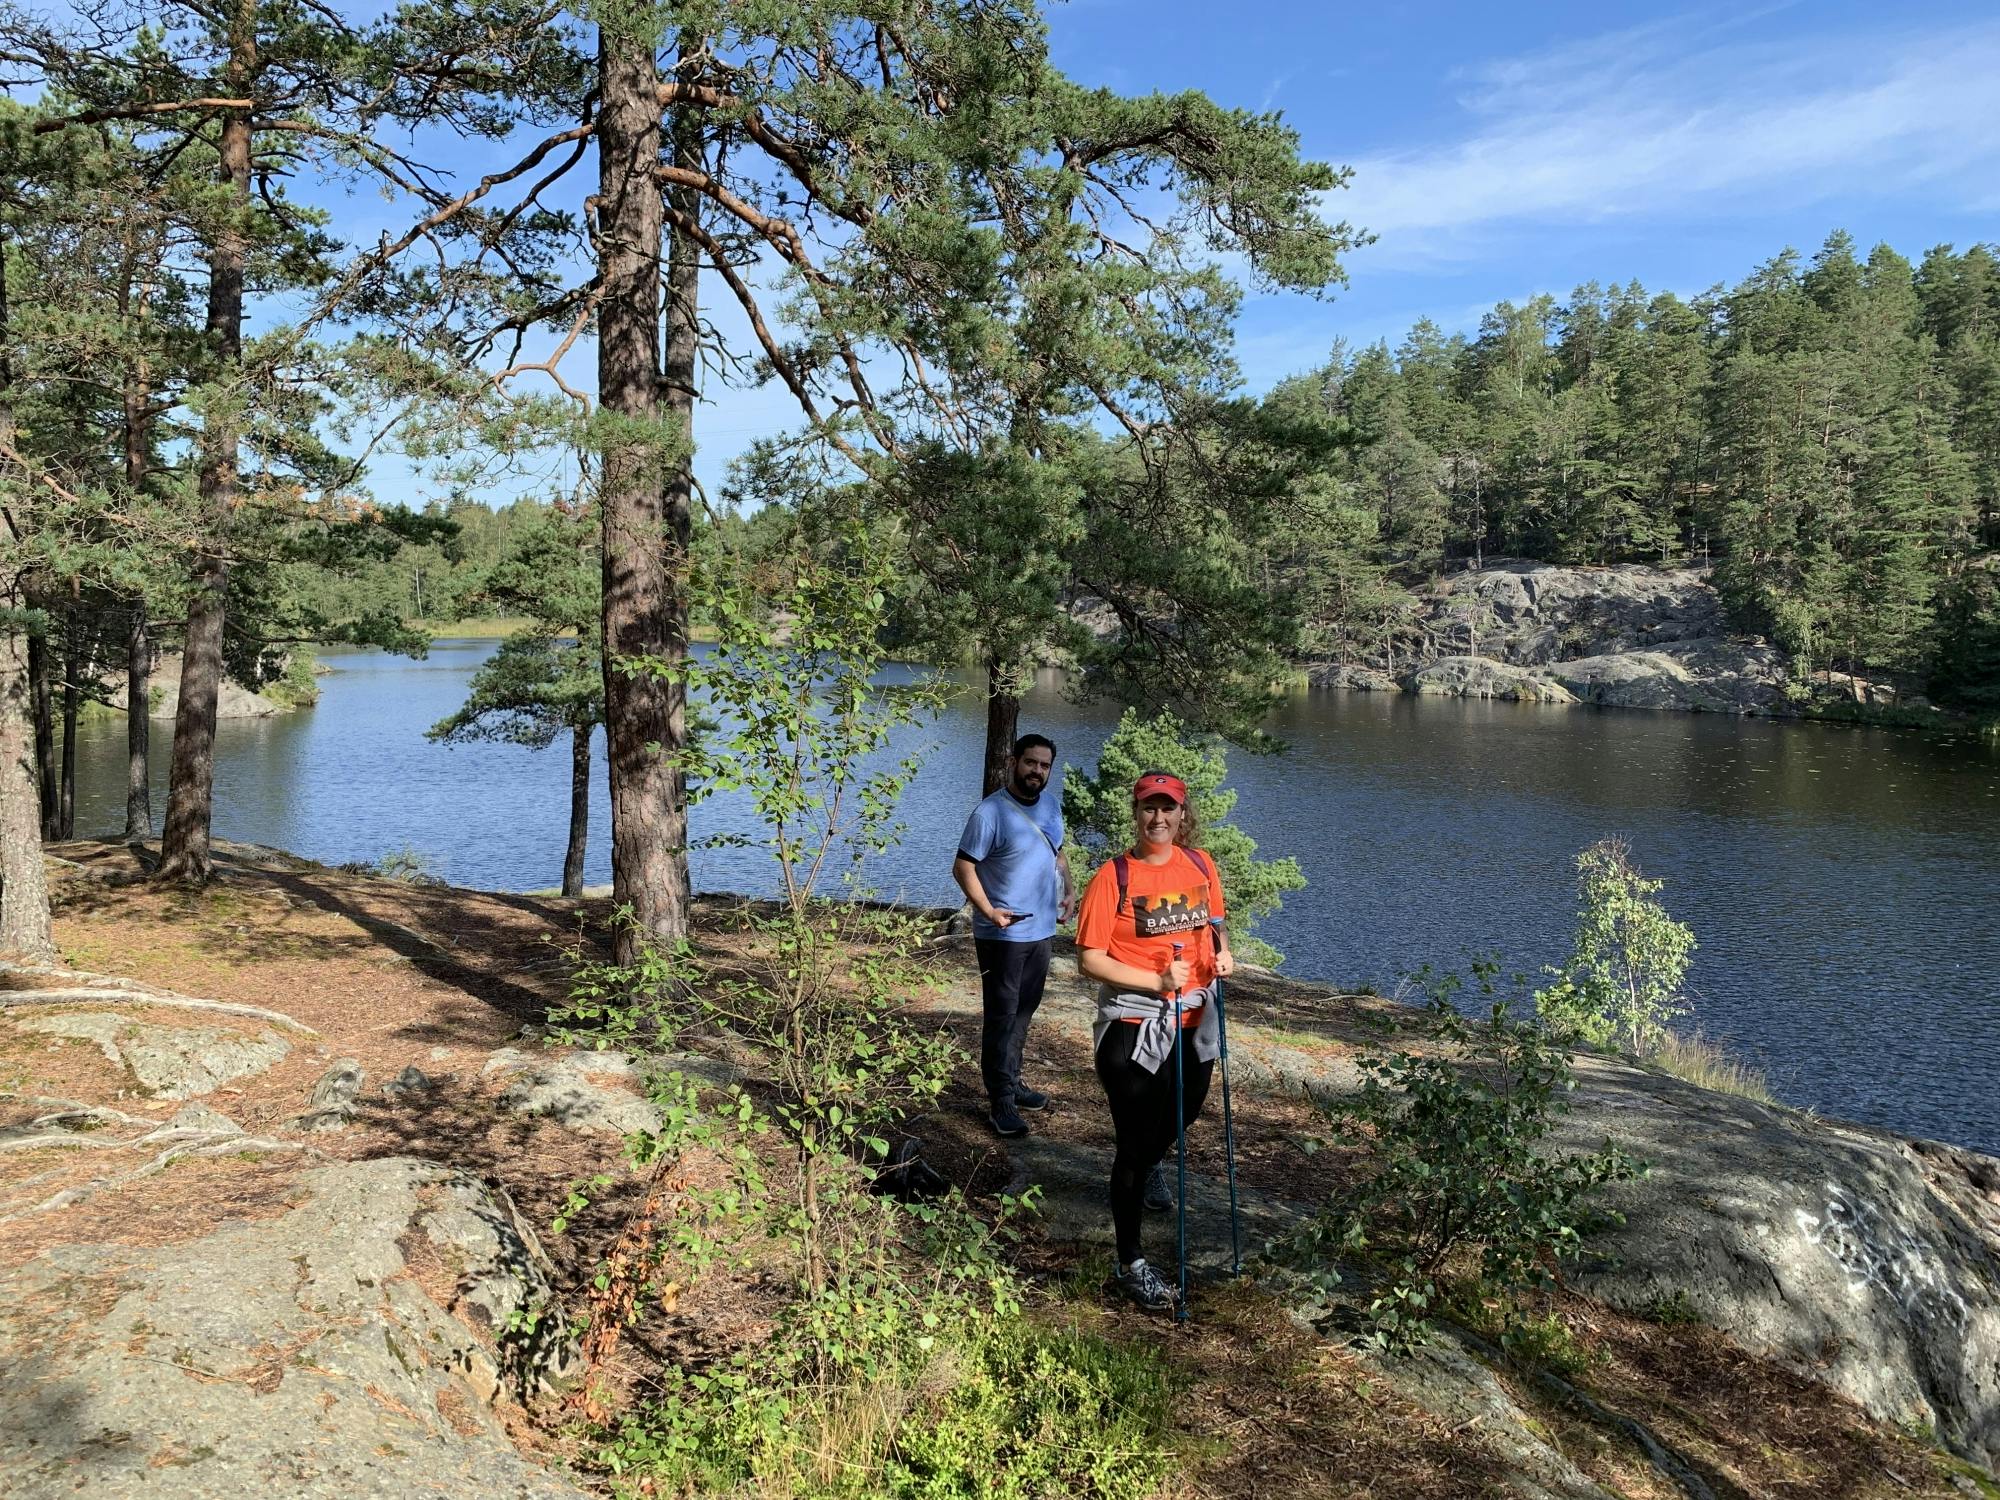 Guidad ekovänlig vandring i Stockholms naturreservat